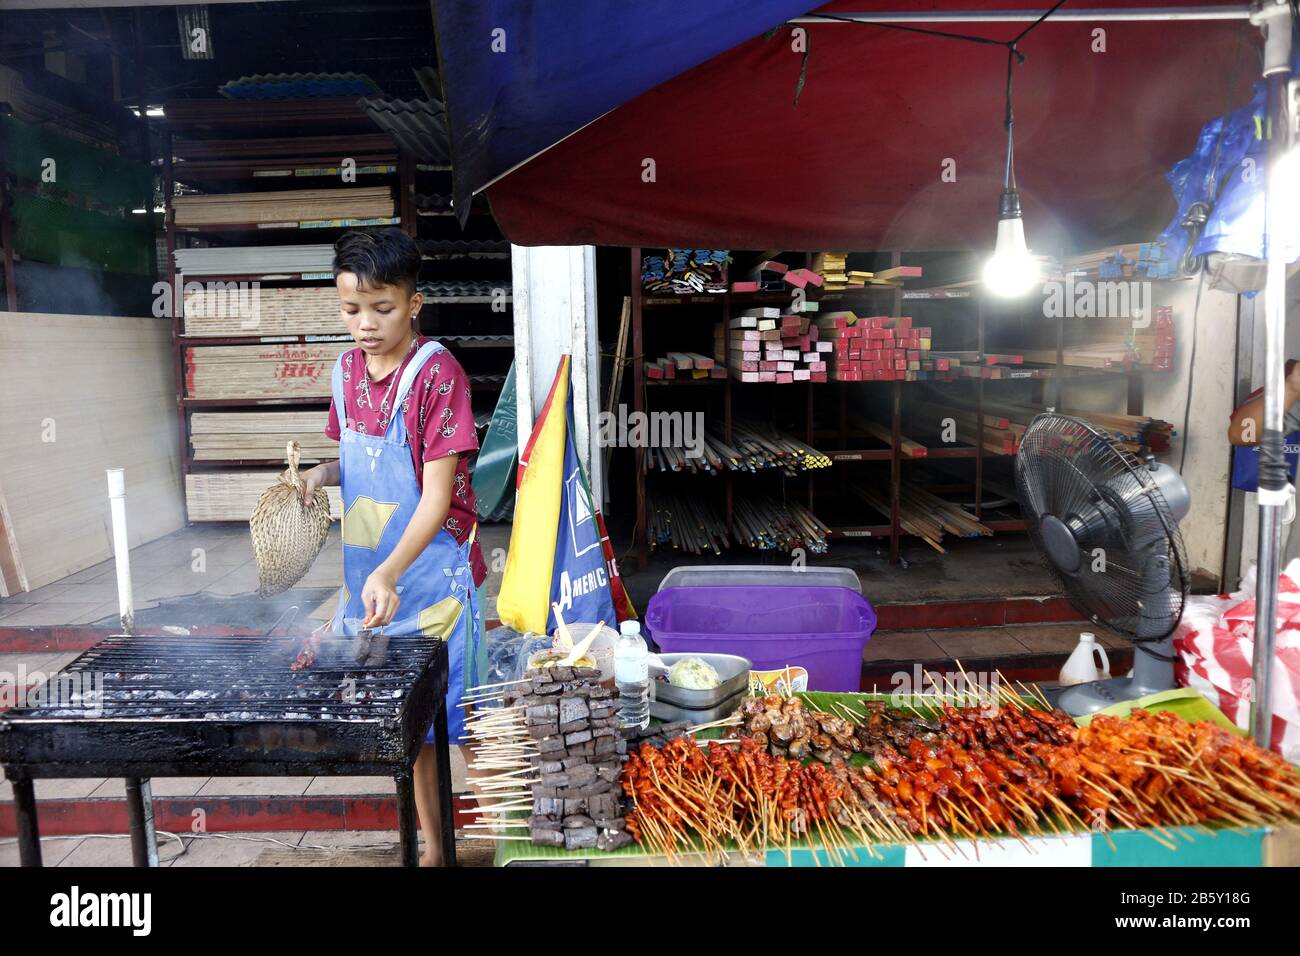 Antipolo, Rizal, Philippines - 24 février 2020: Le vendeur de nourriture de rue à son étalage de nourriture vend des innards de porc et de poulet grillés dans des bâtonnets de barbecue. Banque D'Images